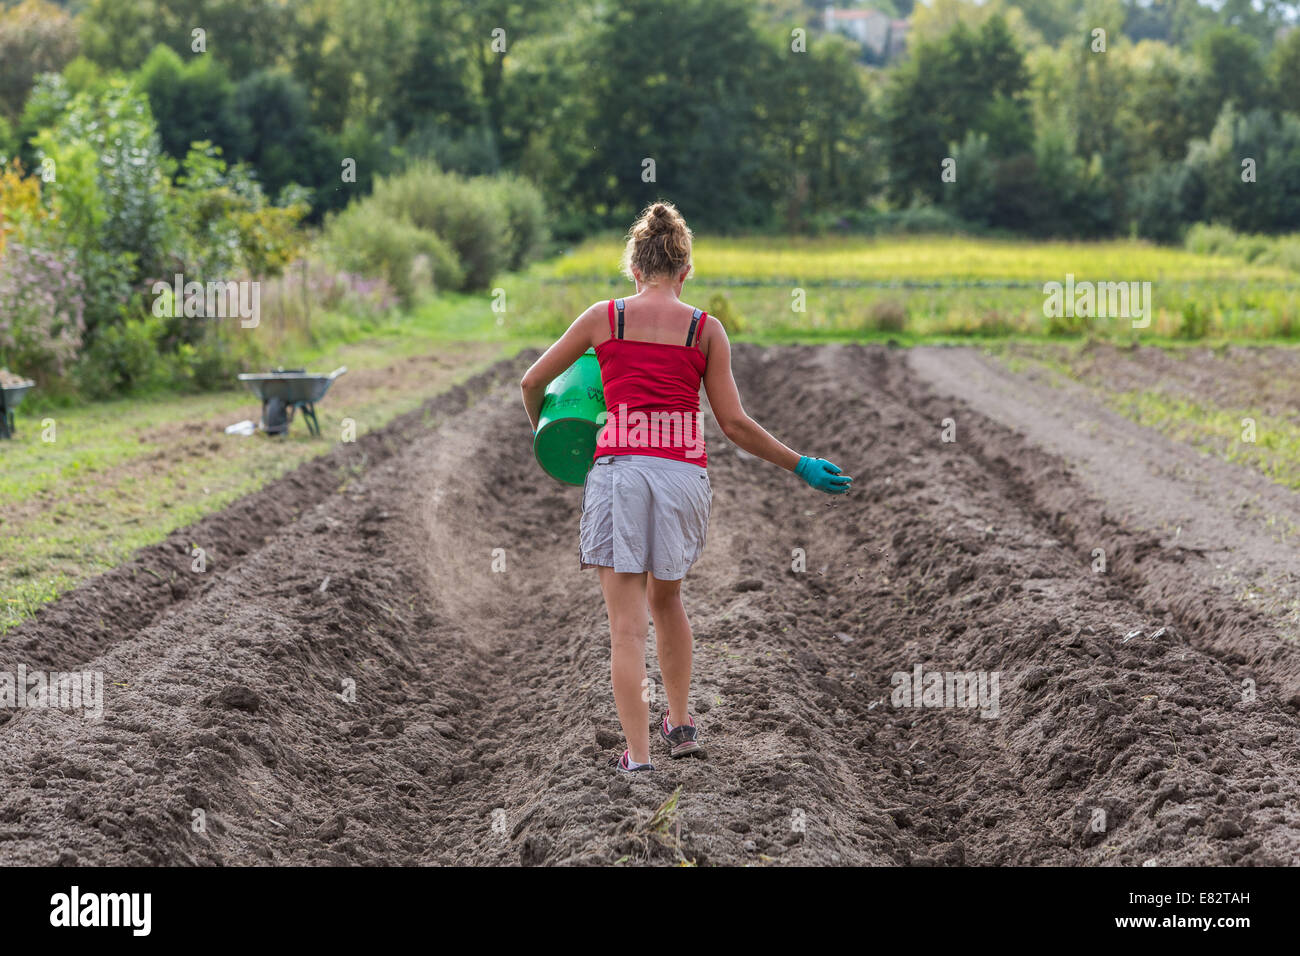 Les travailleurs agricoles, cueillette fruits et légumes en libre service, Angoulême, Charente, France. Banque D'Images